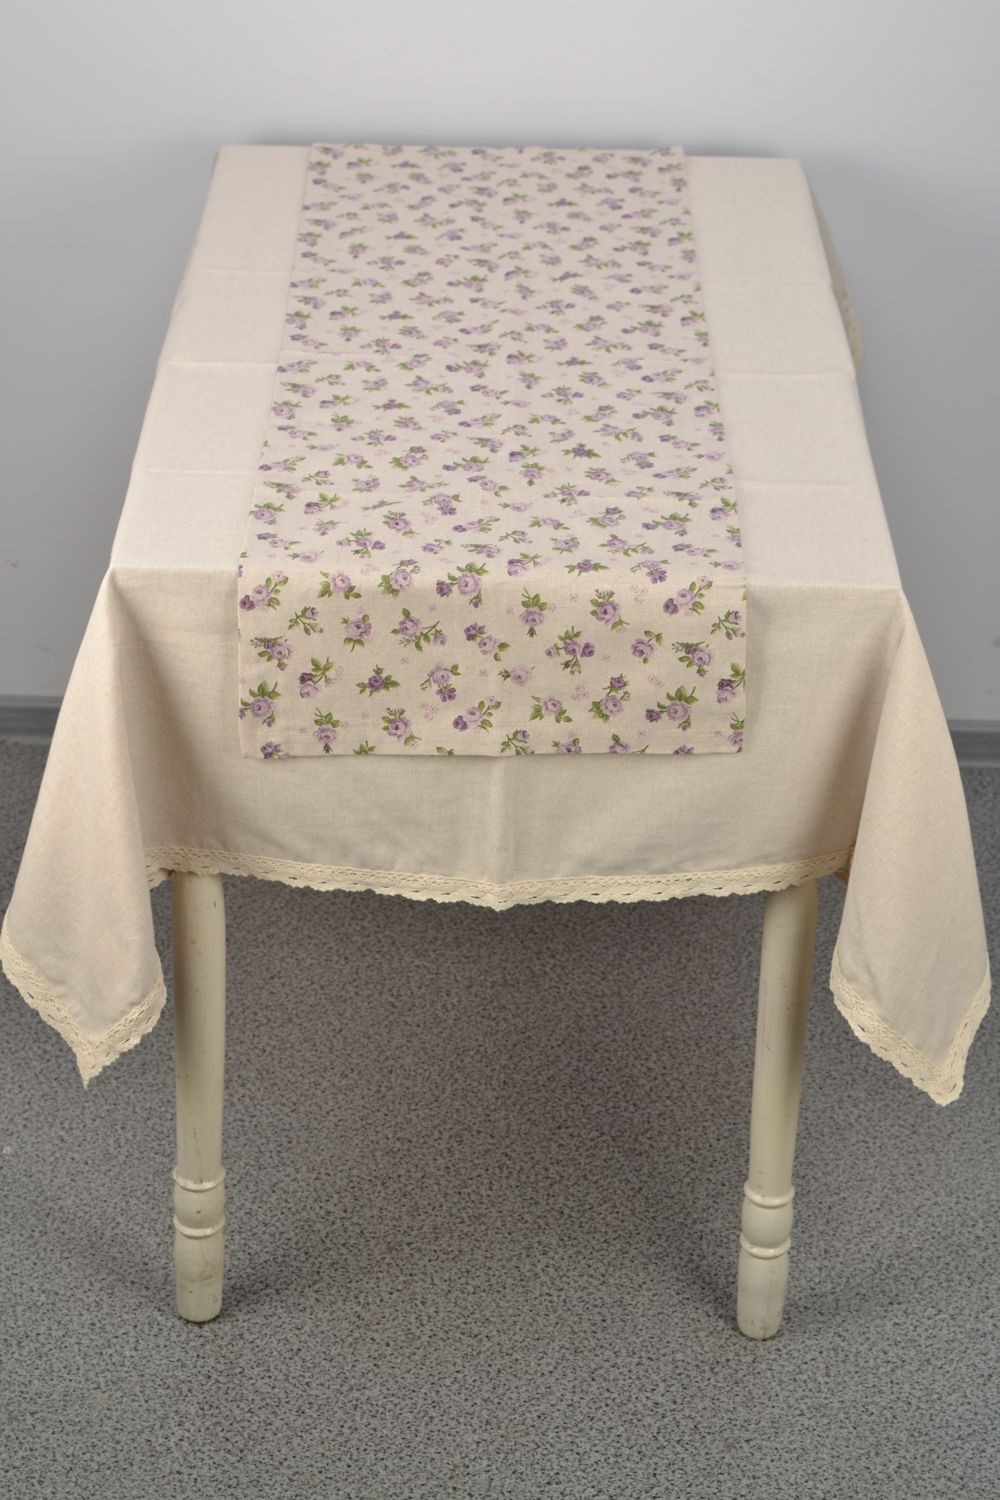 Дорожка галстук на стол из холопка в цветочек фото 1